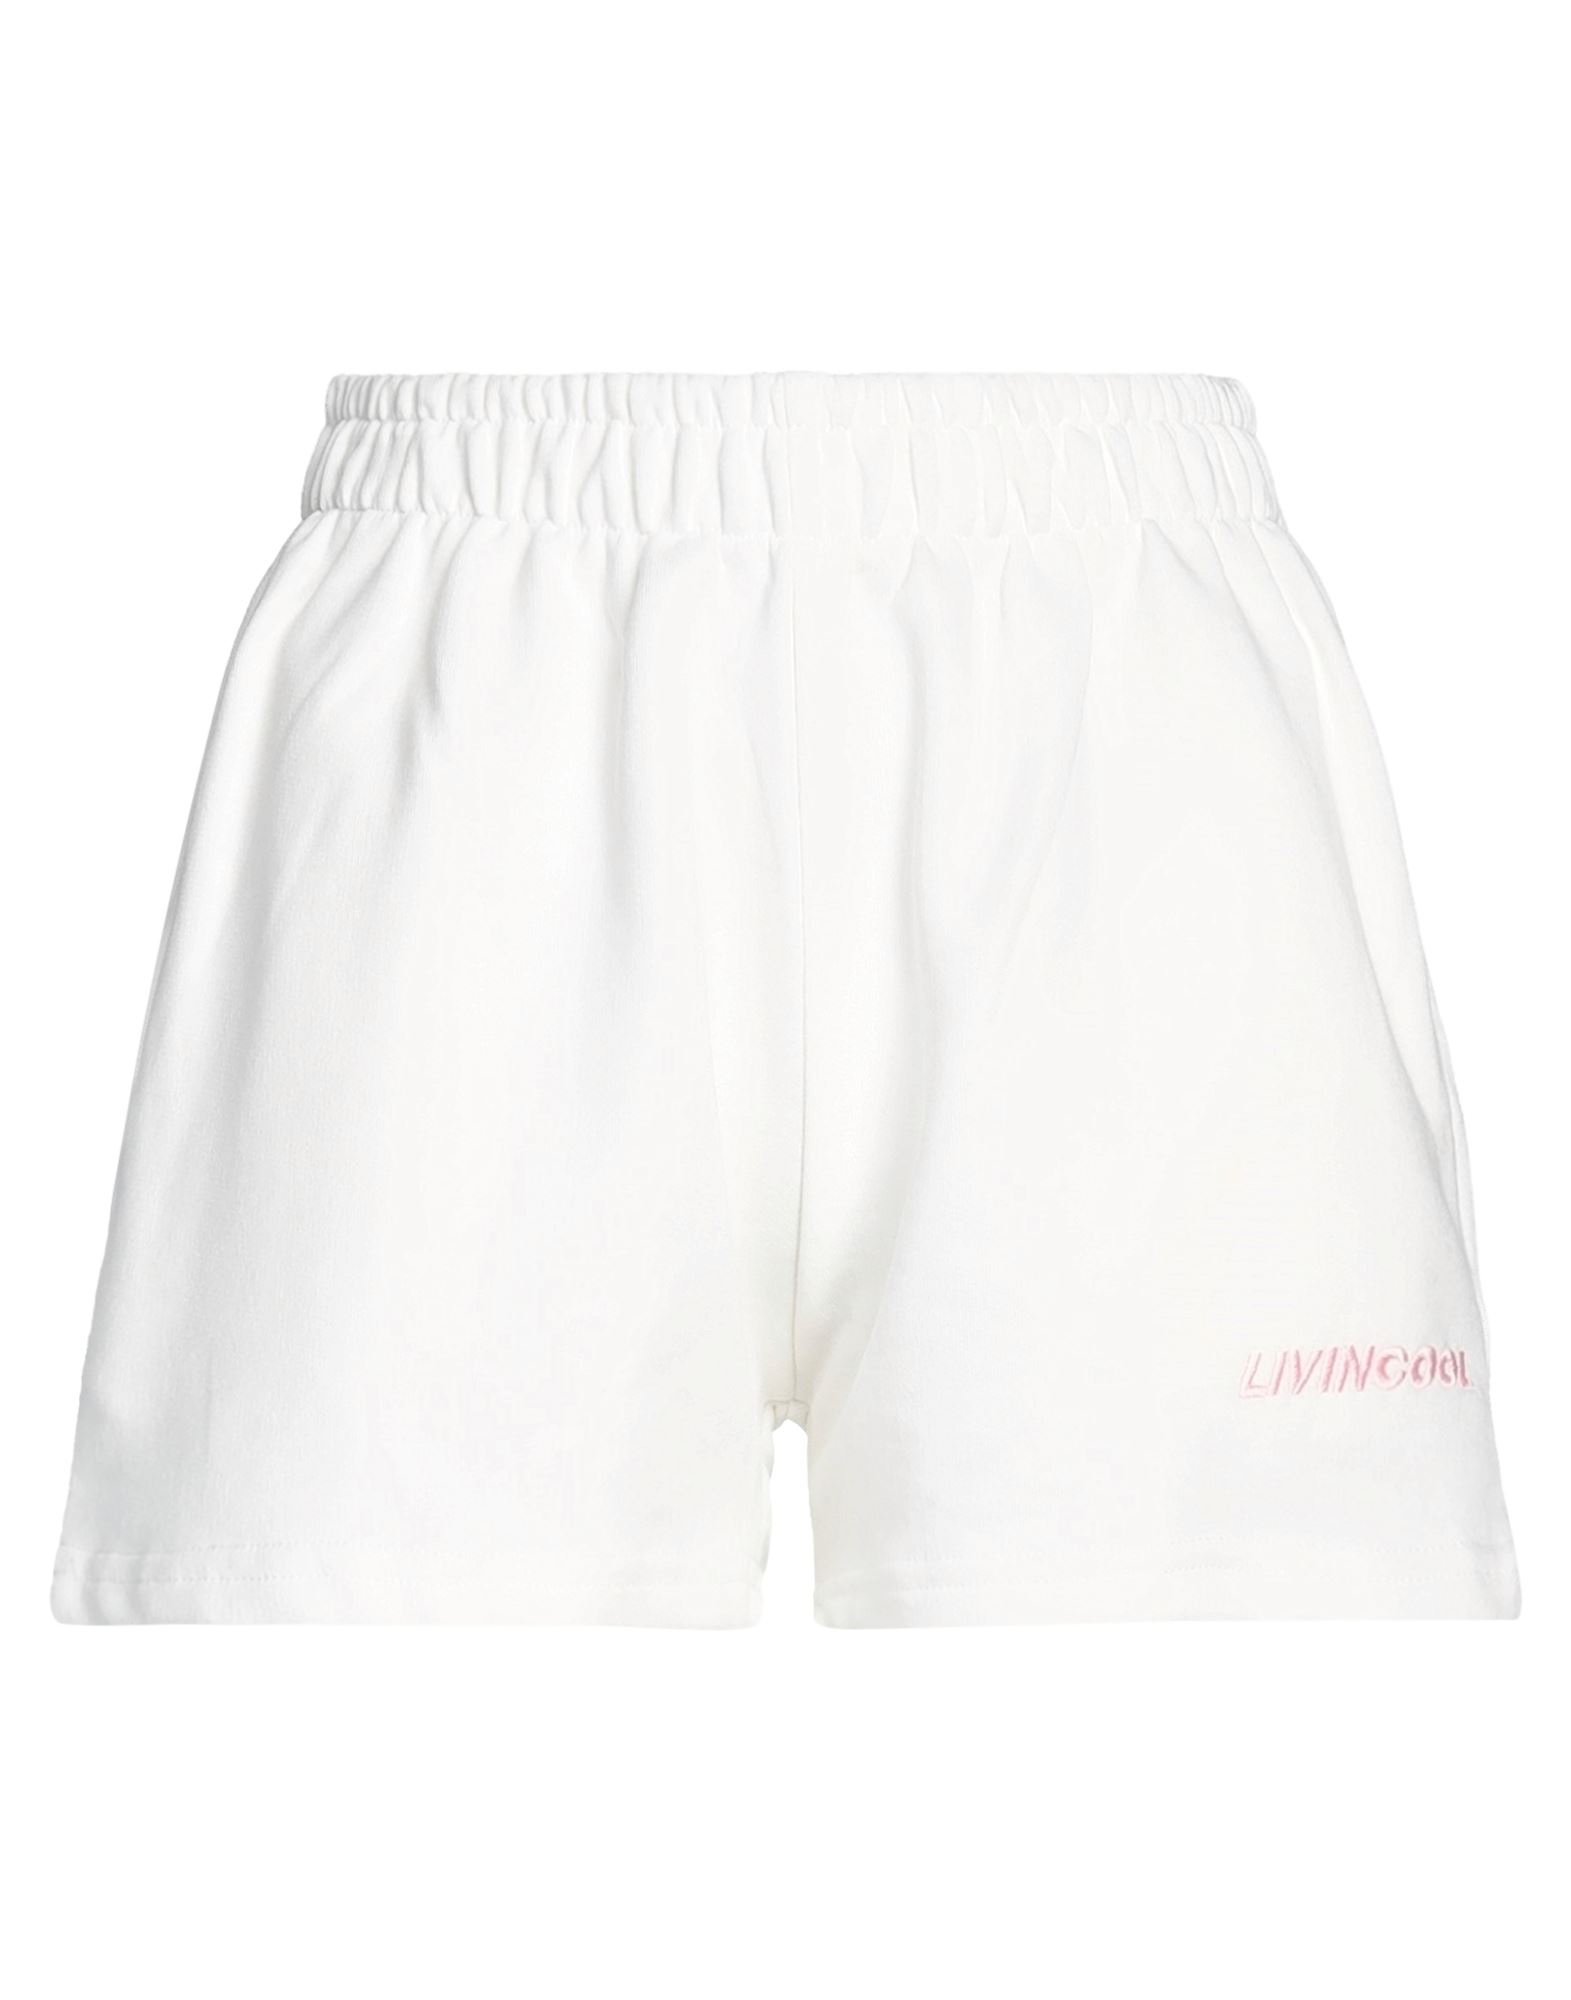 Livincool Woman Shorts & Bermuda Shorts White Size L Cotton